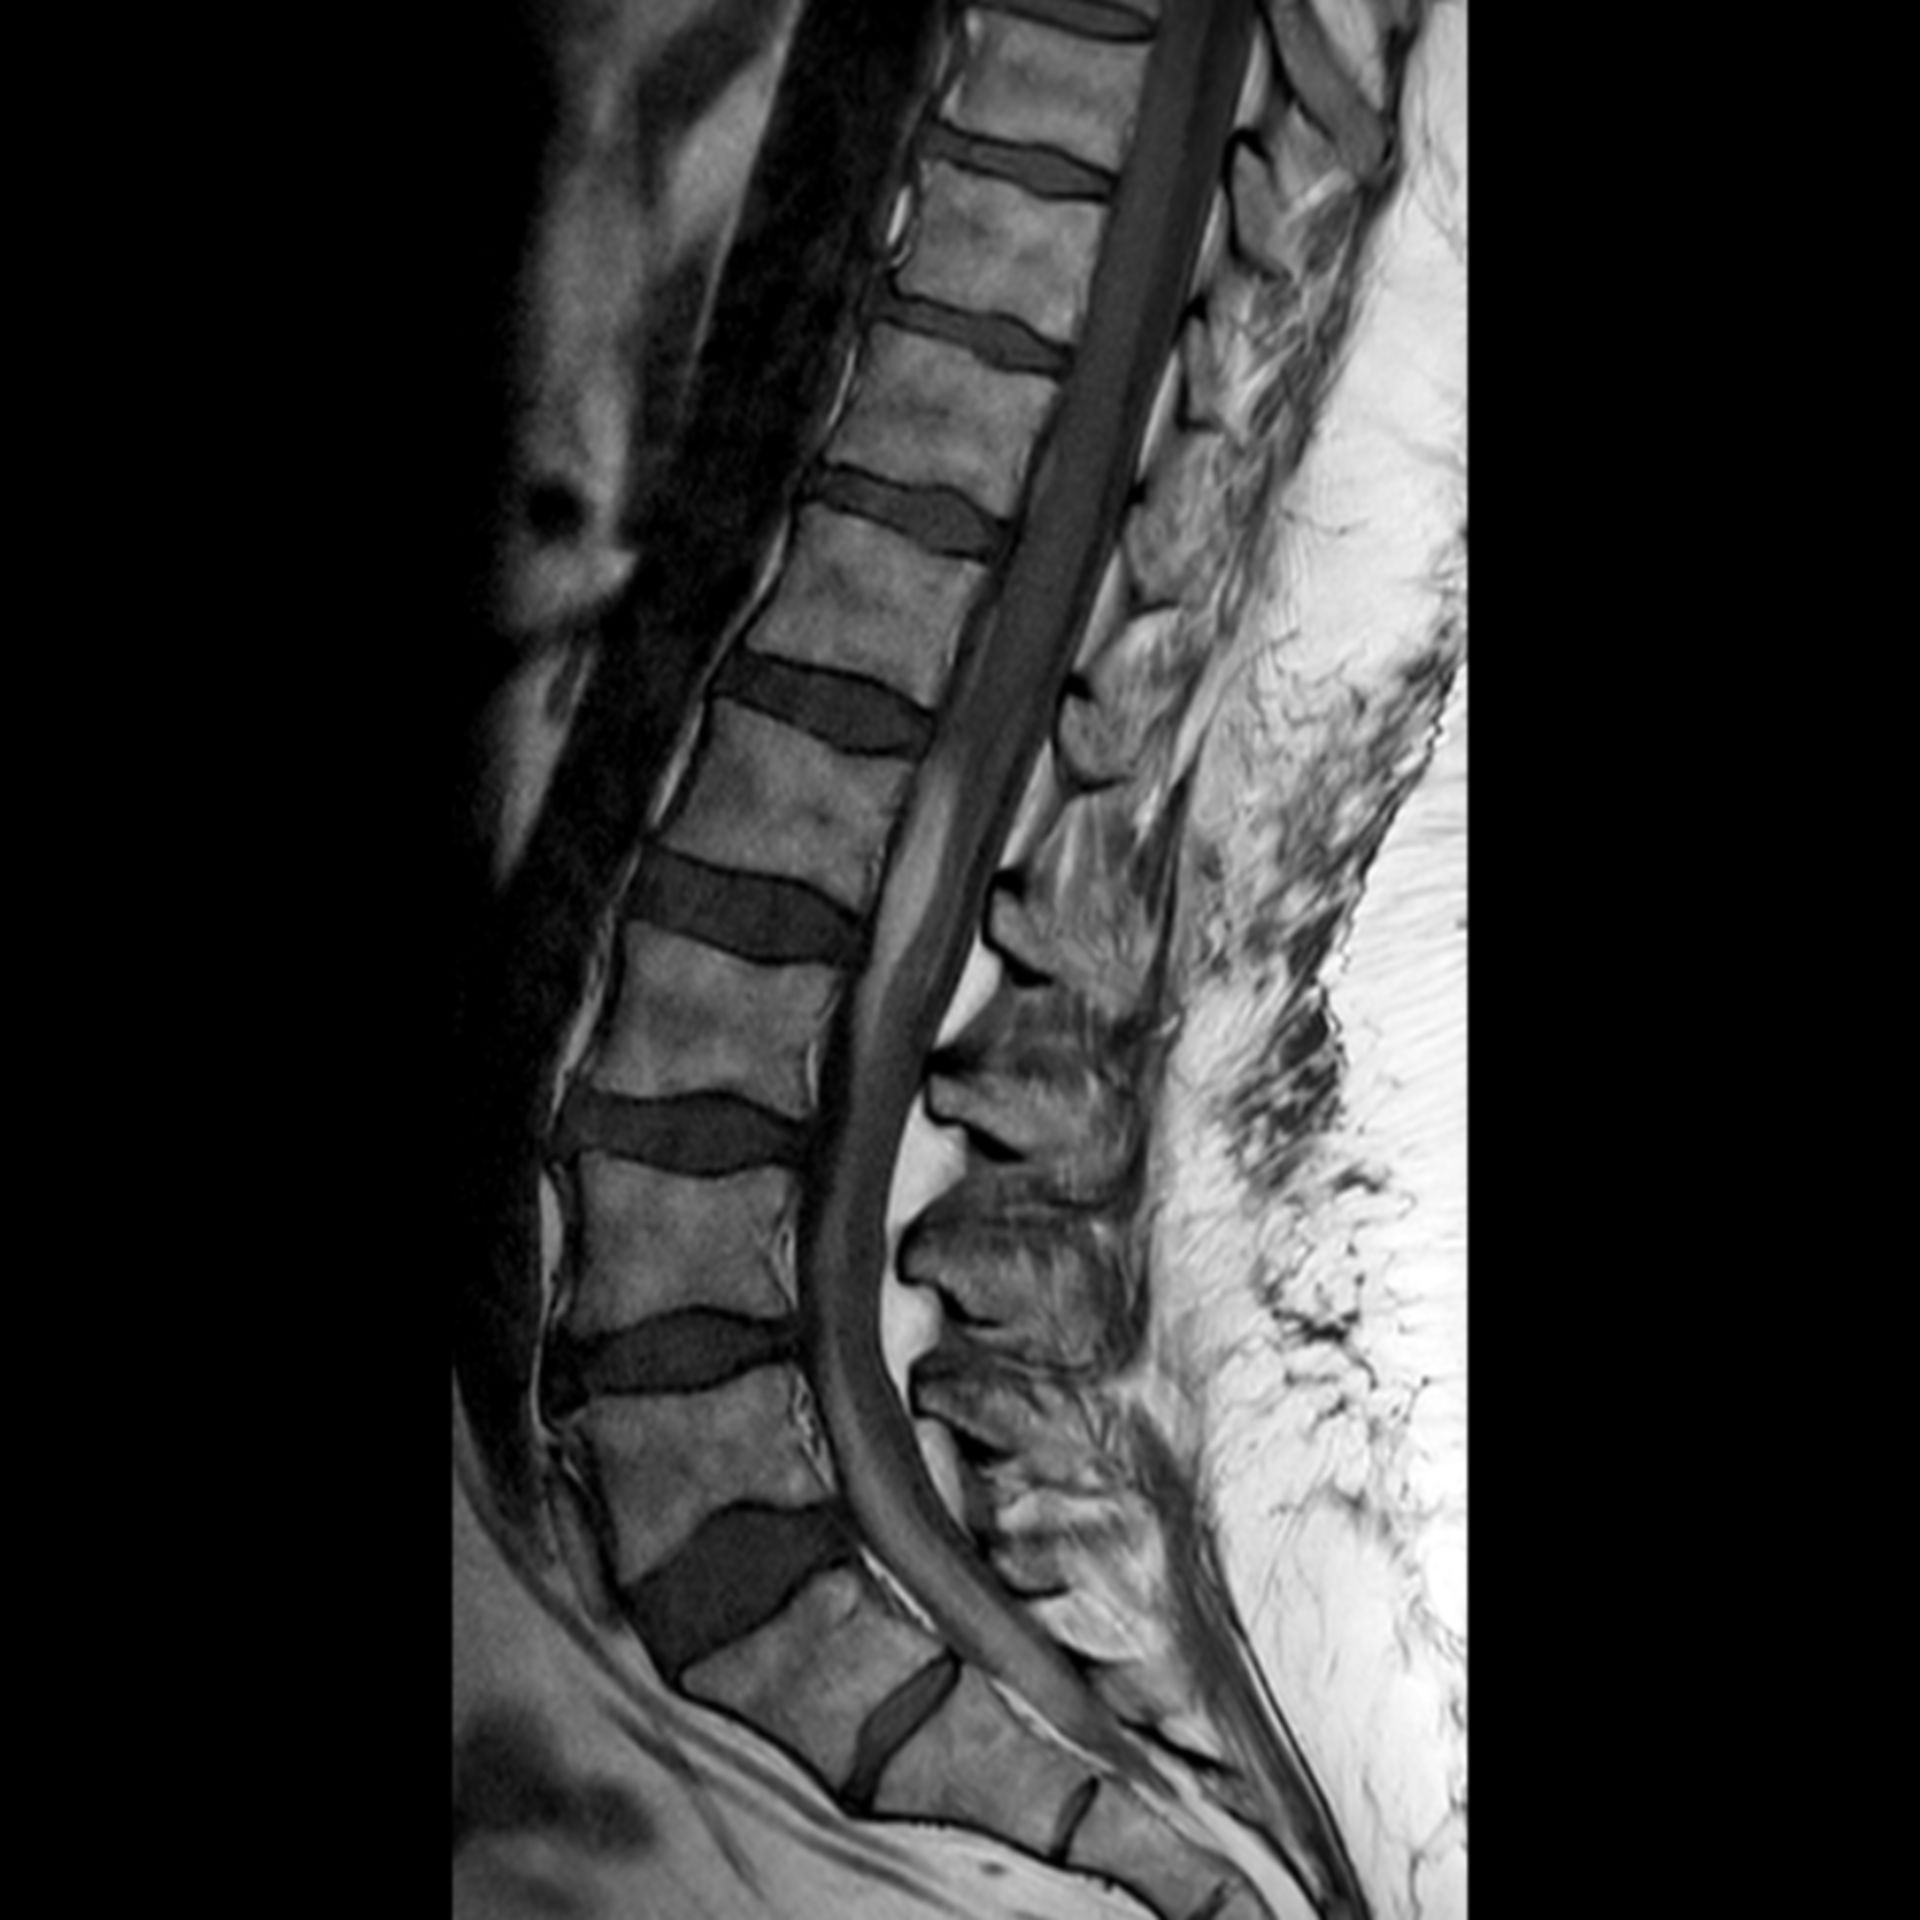 MRT spine